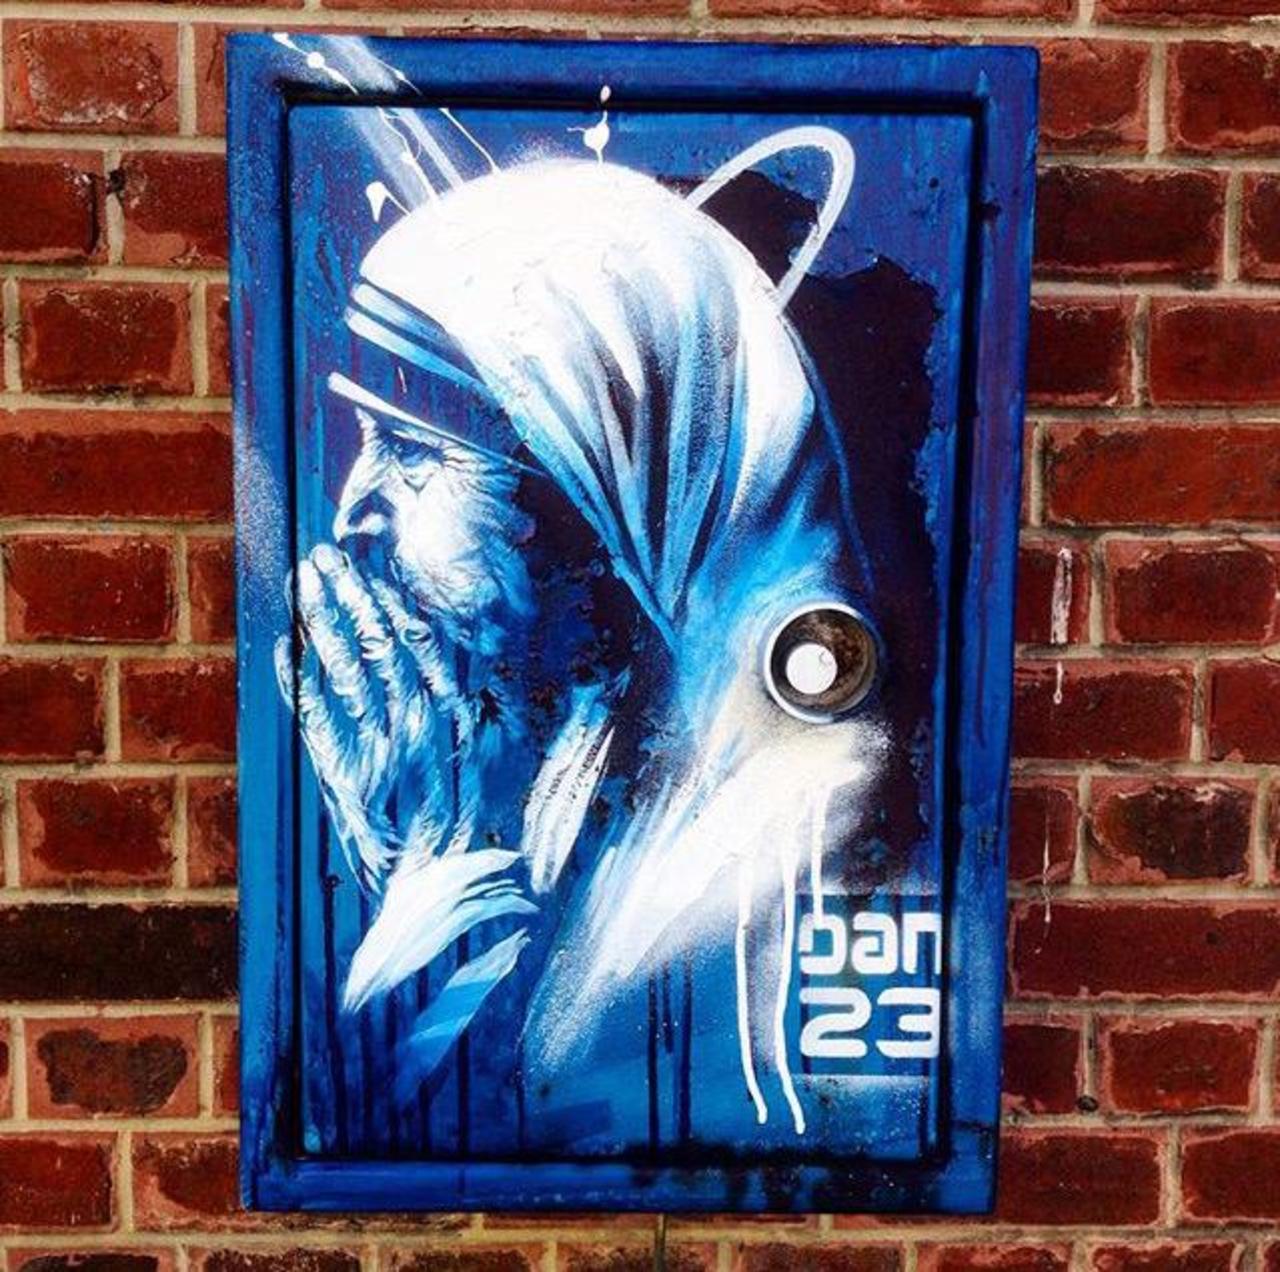 New Street Art 'Détail Spirit' by Dan23 

#art #graffiti #mural #streetart http://t.co/kDgB115fwC